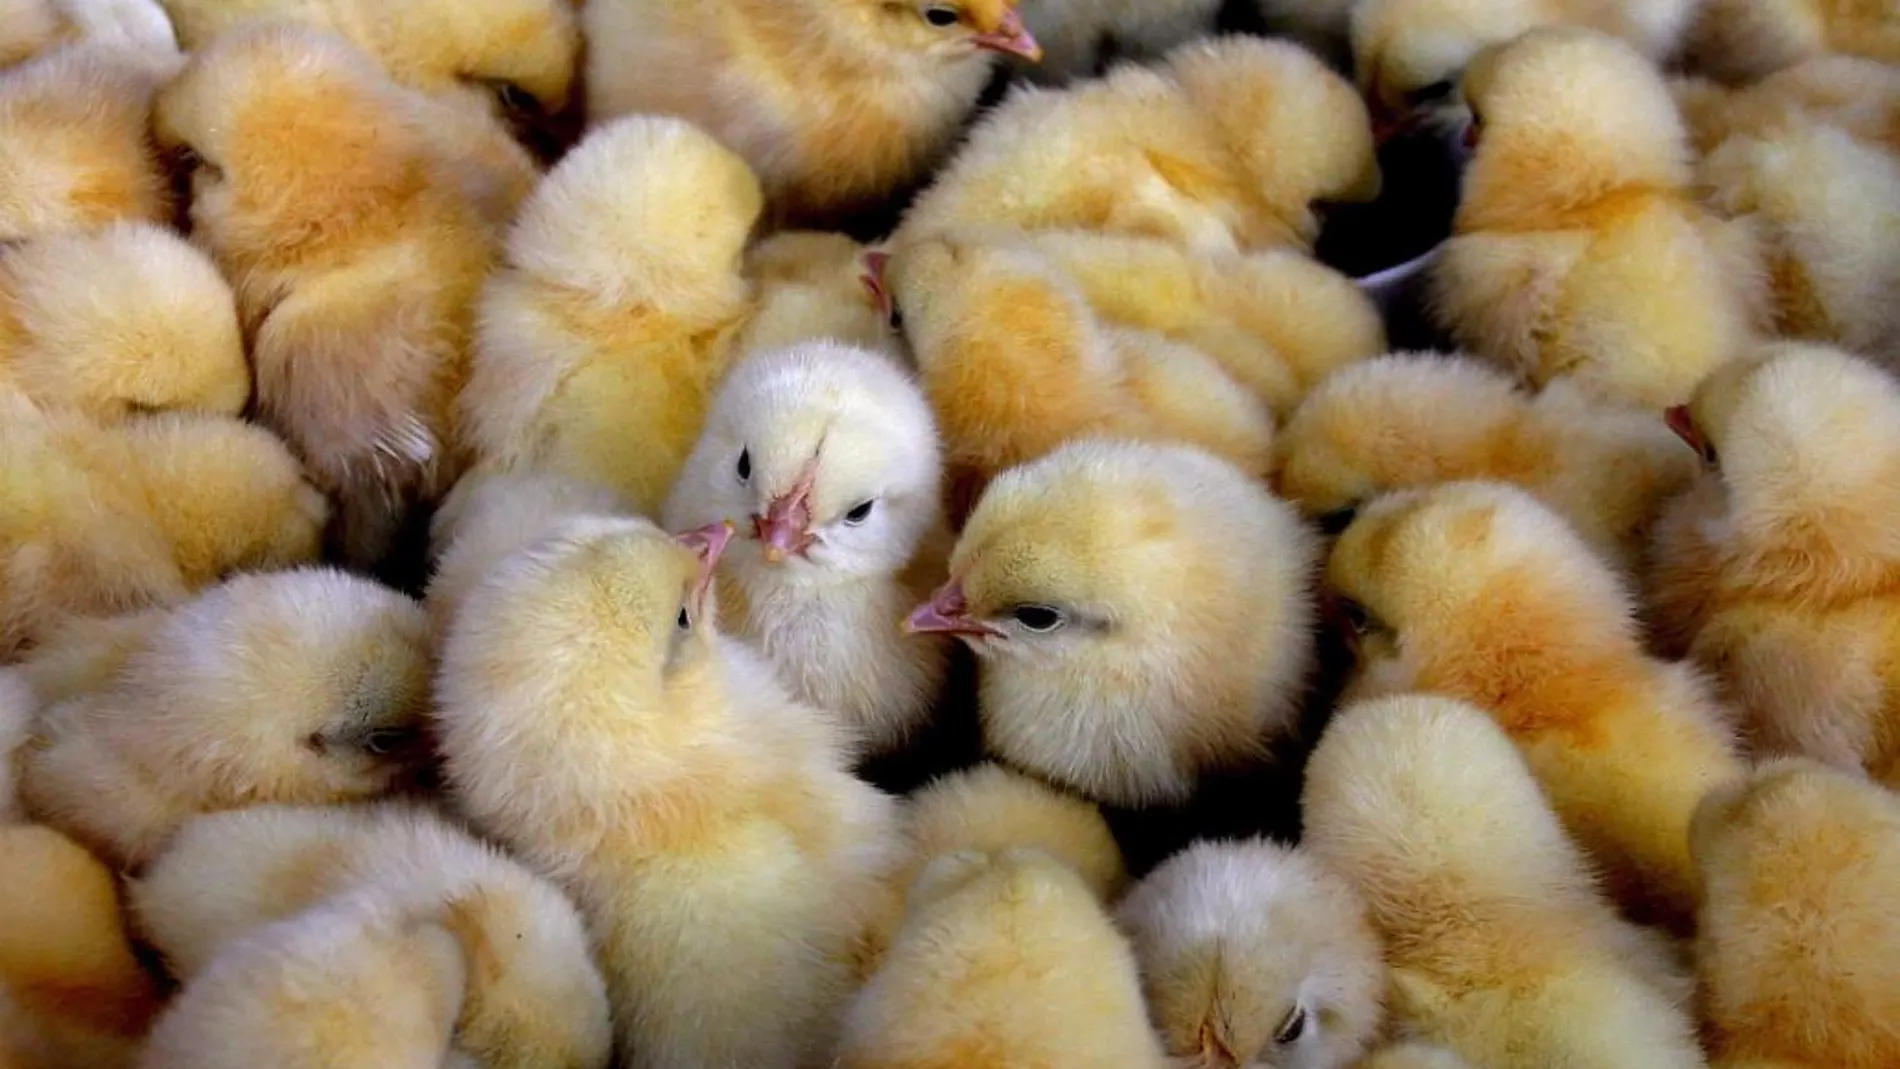 La industria avícola tritura a millones de pollitos macho nada más nacer